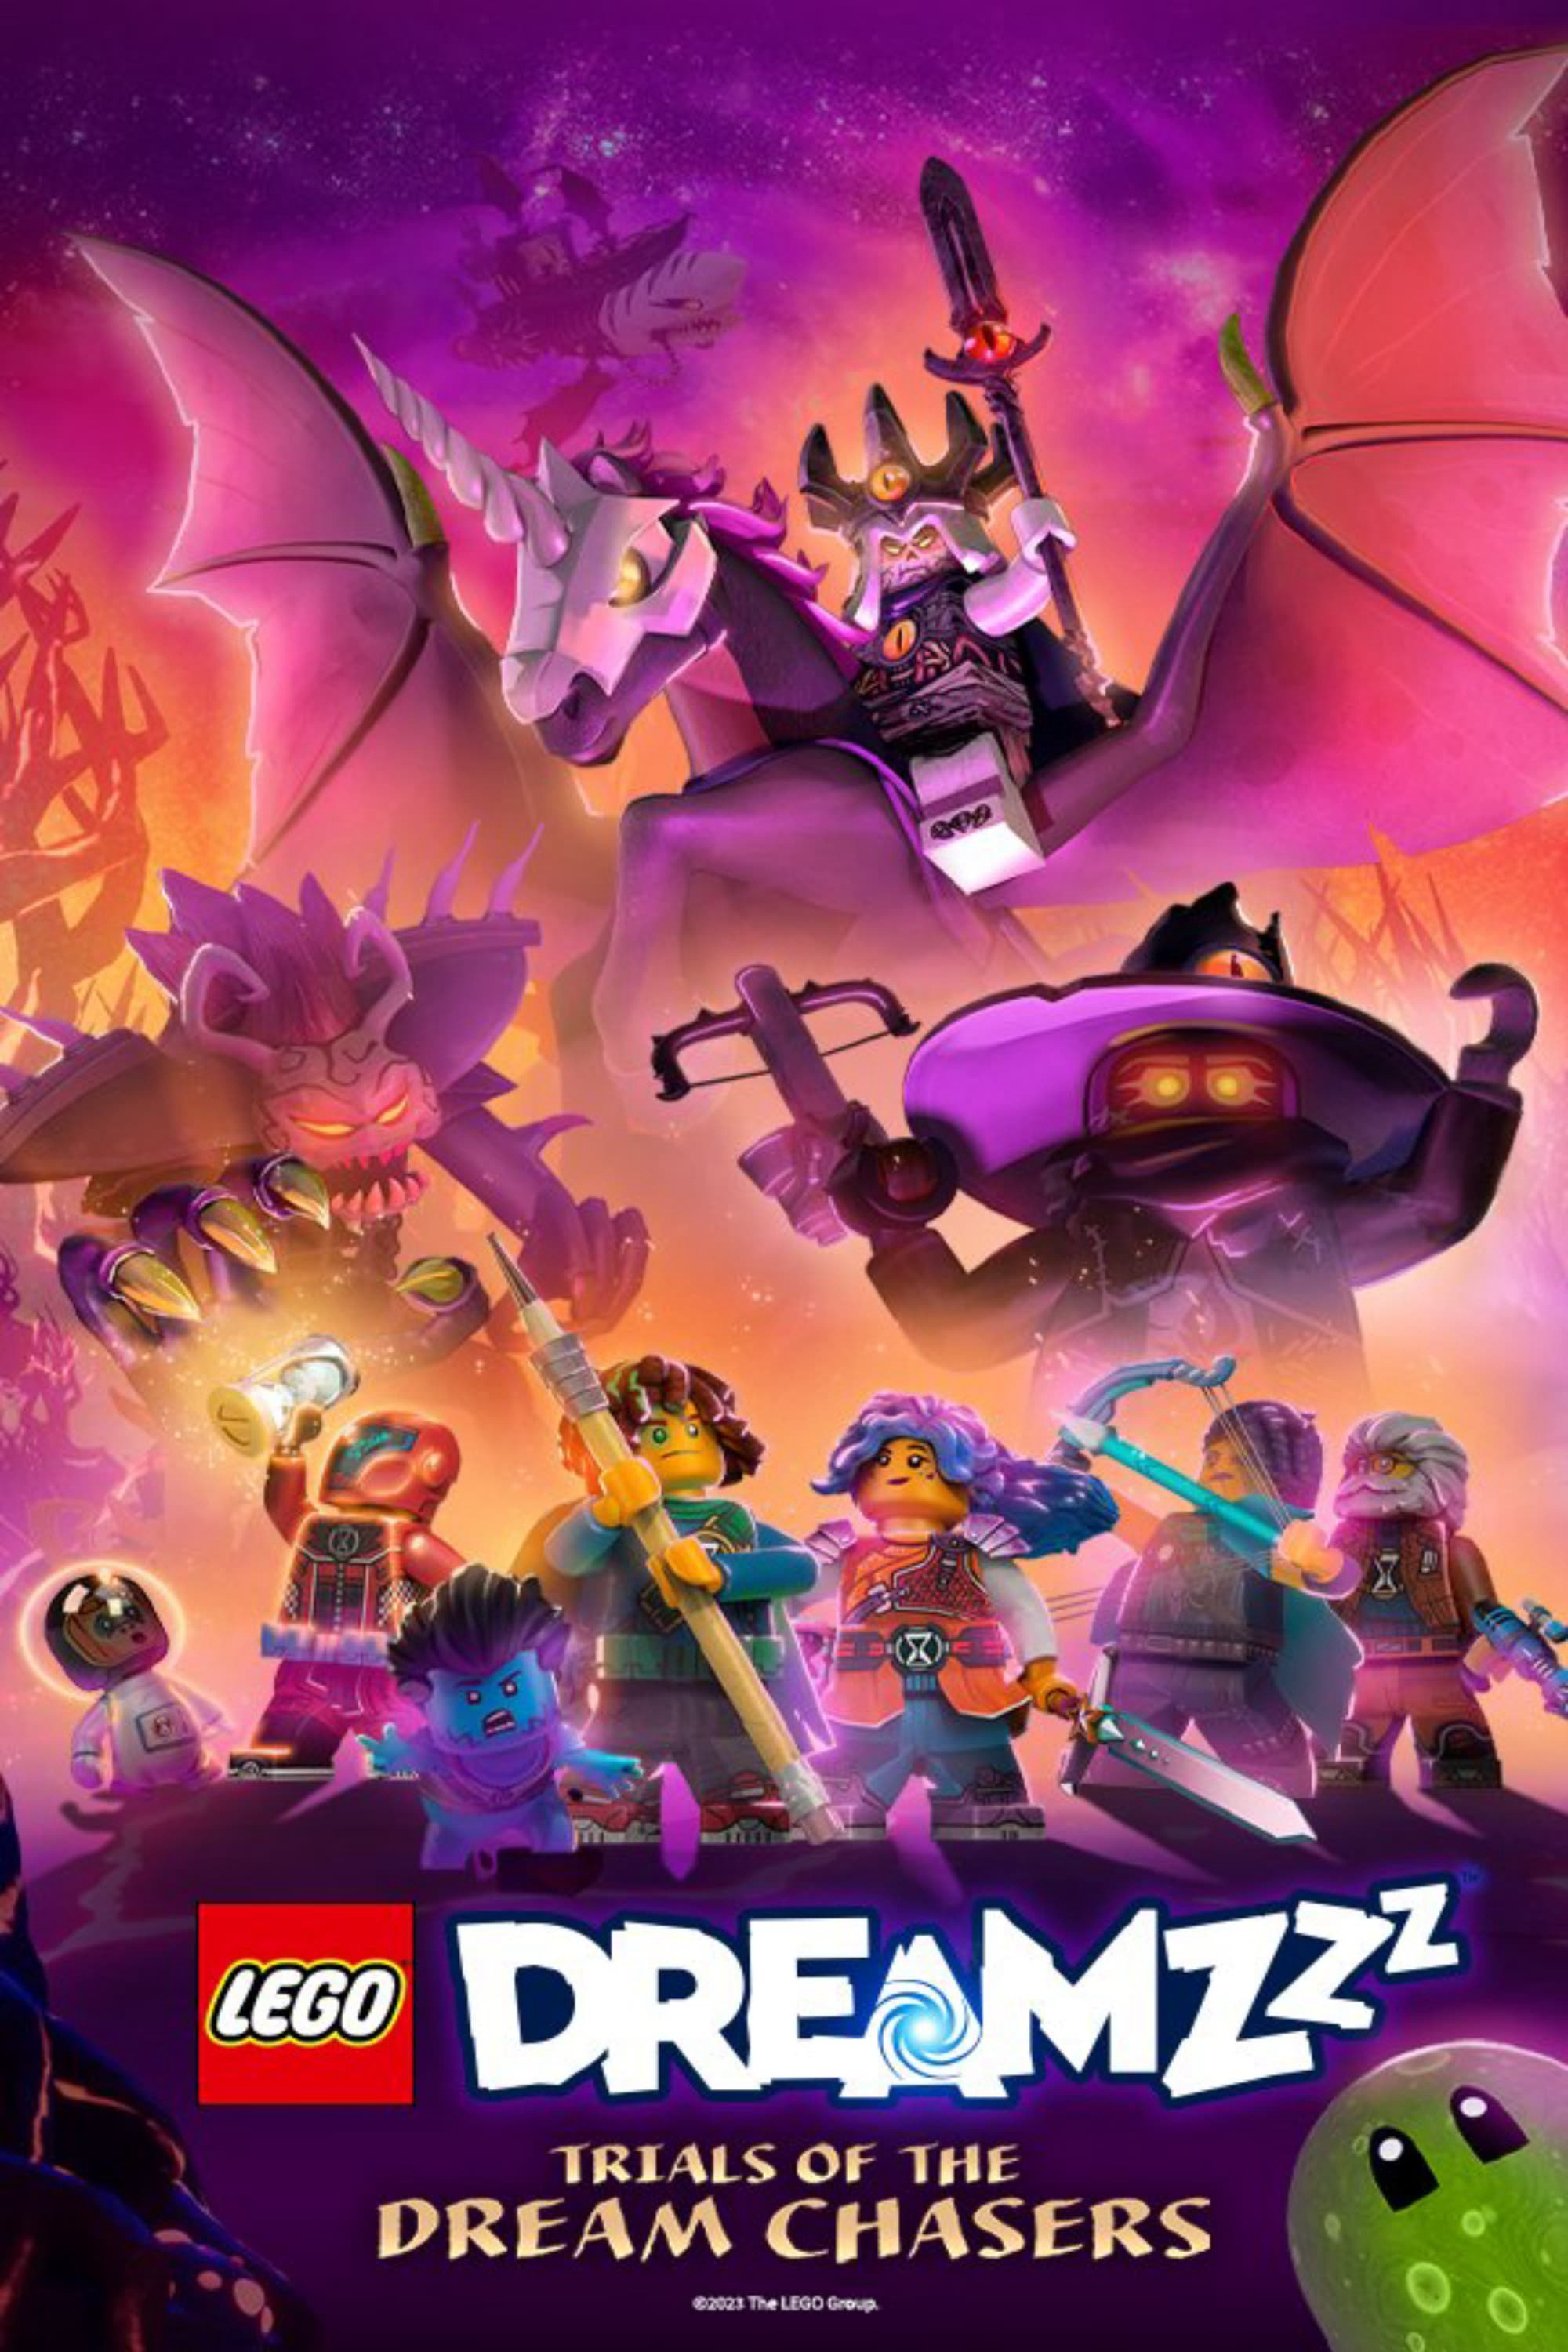 Banner Phim LEGO Dreamzzz (LEGO Dreamzzz)